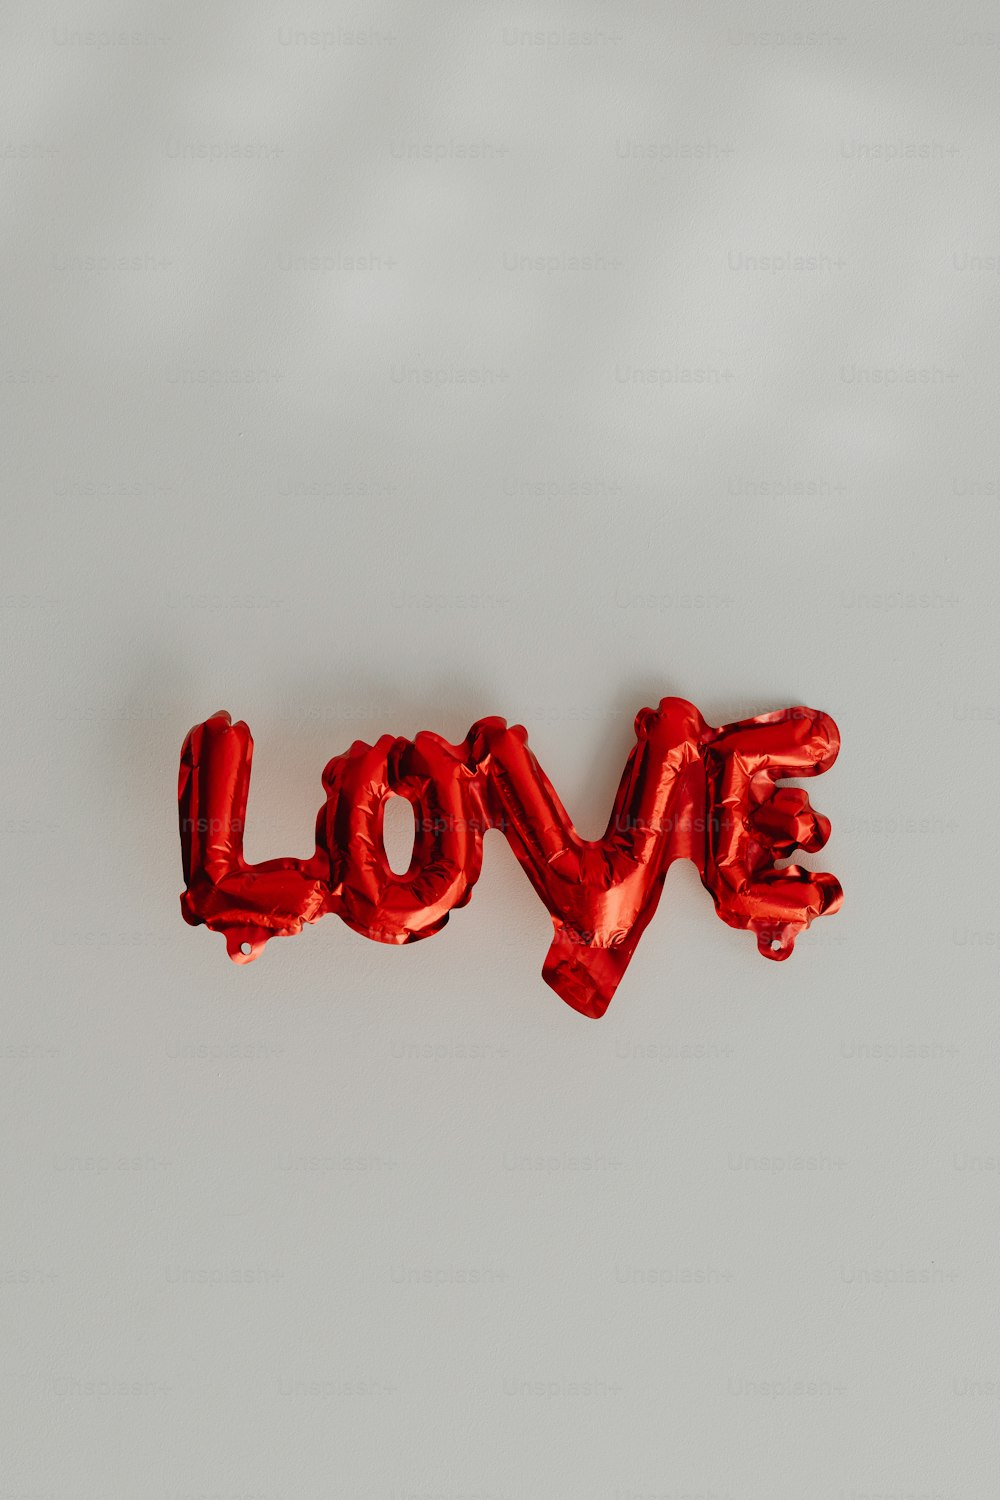 Le mot amour orthographié avec des ballons en feuille rouge